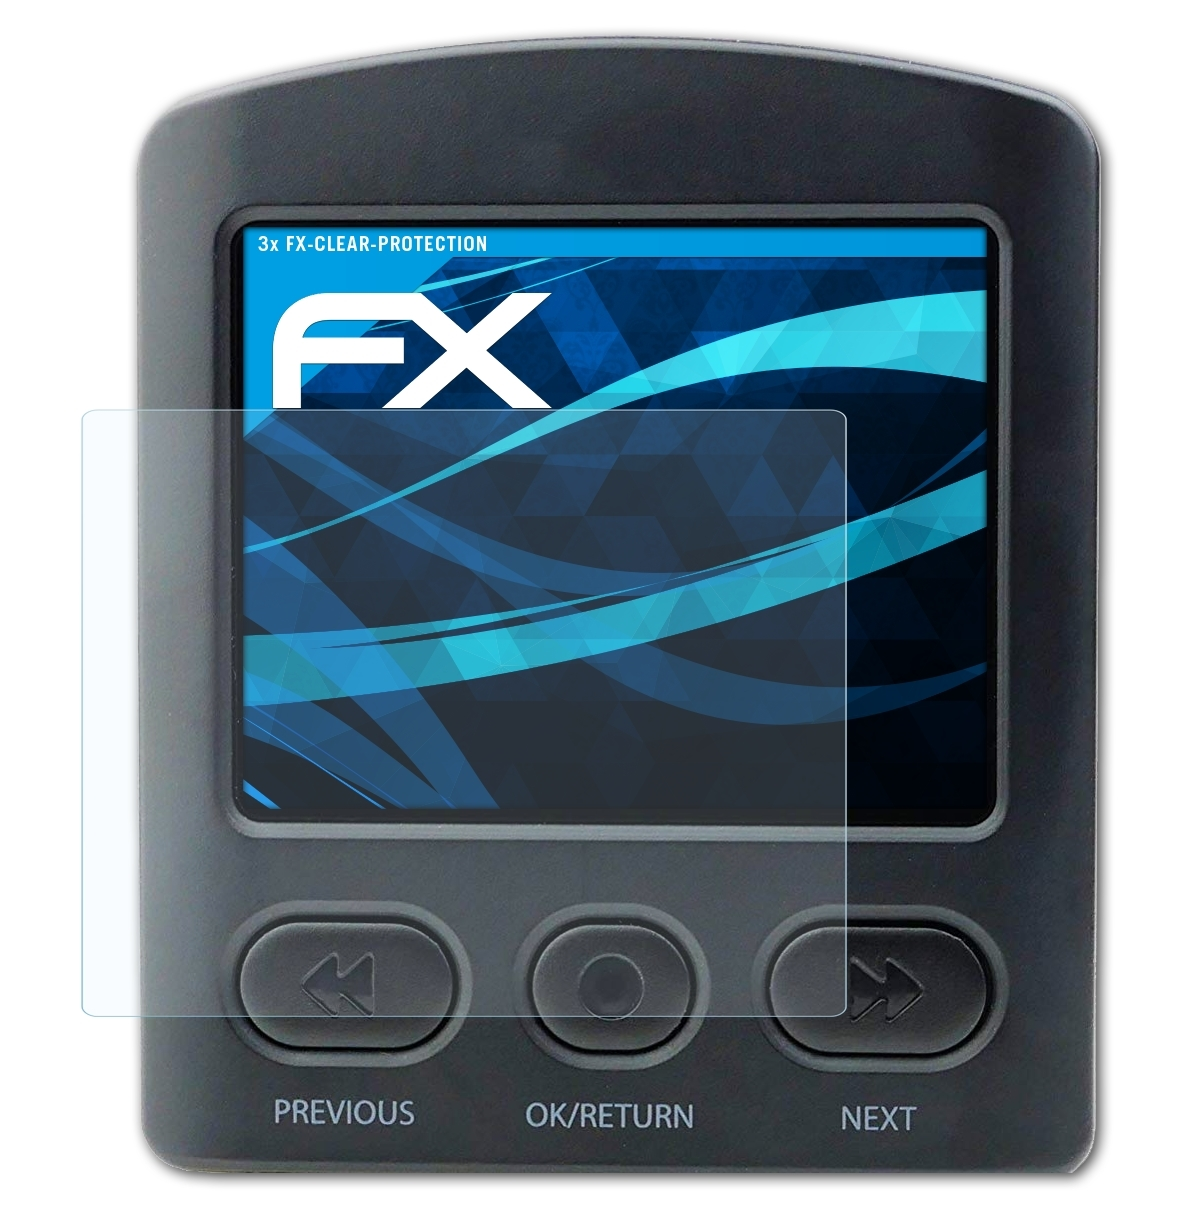 ATFOLIX 3x Displayschutz(für Brinno FX-Clear TLC2000)